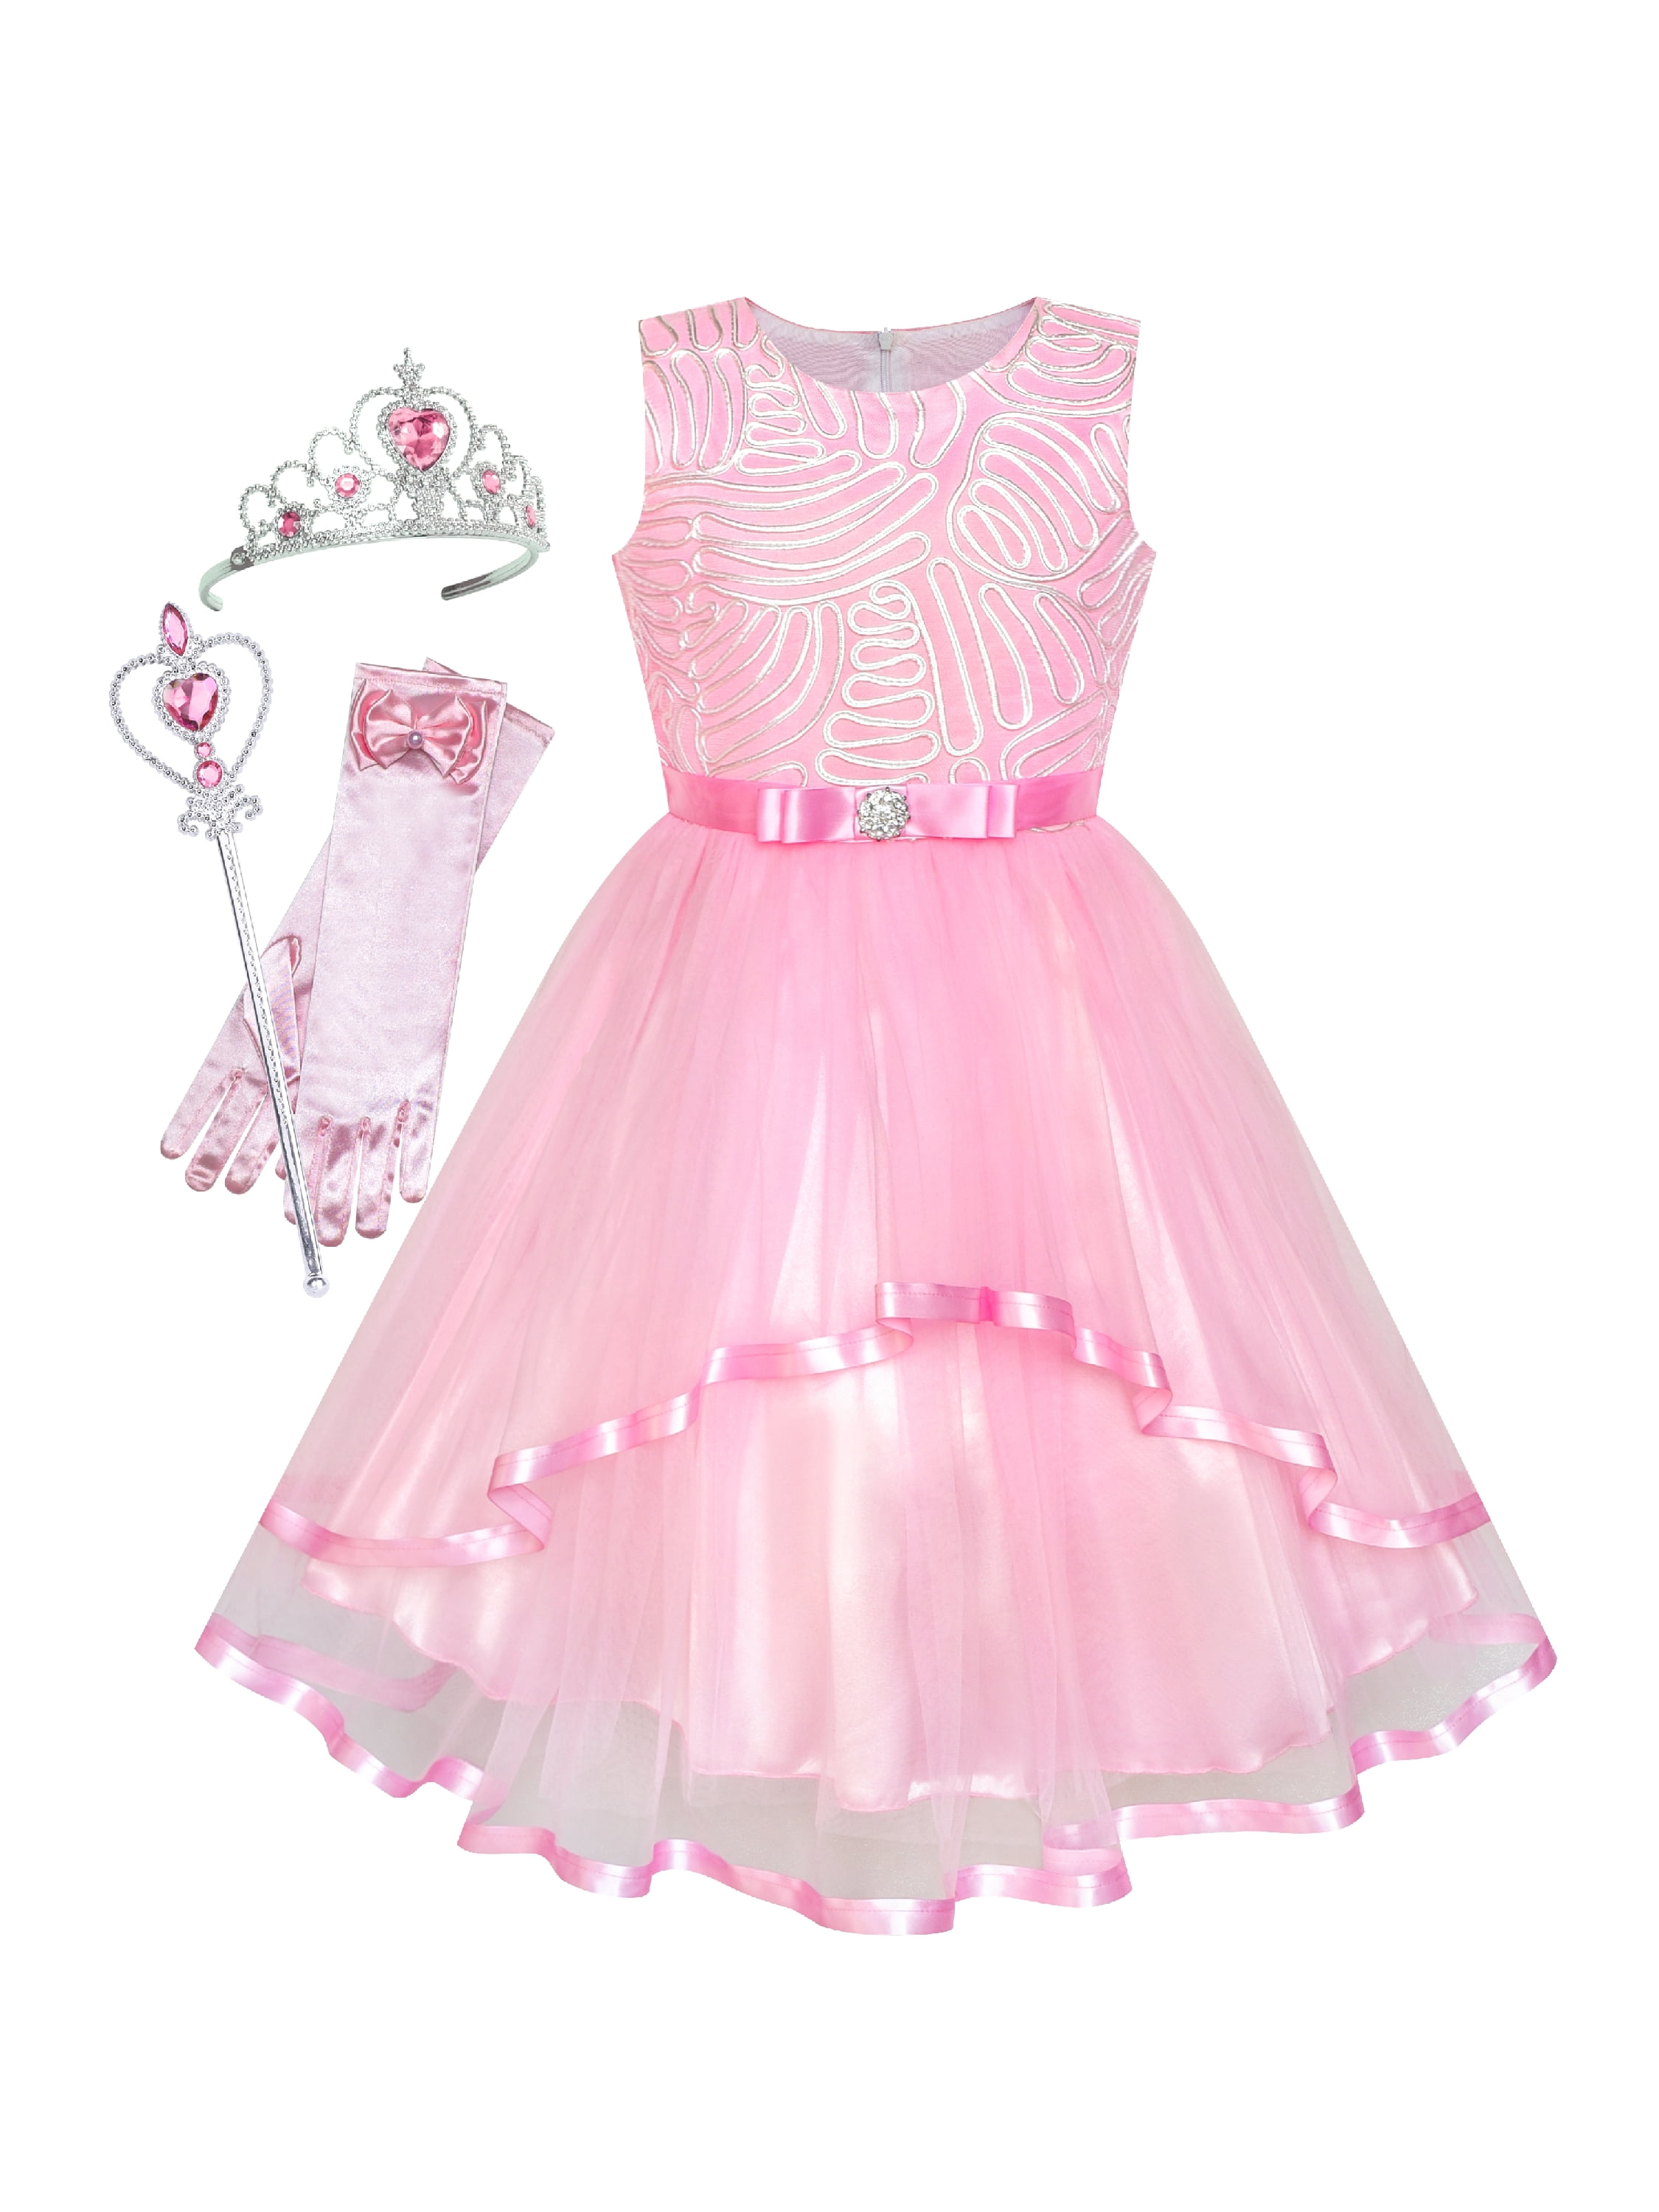 pink princess dress up